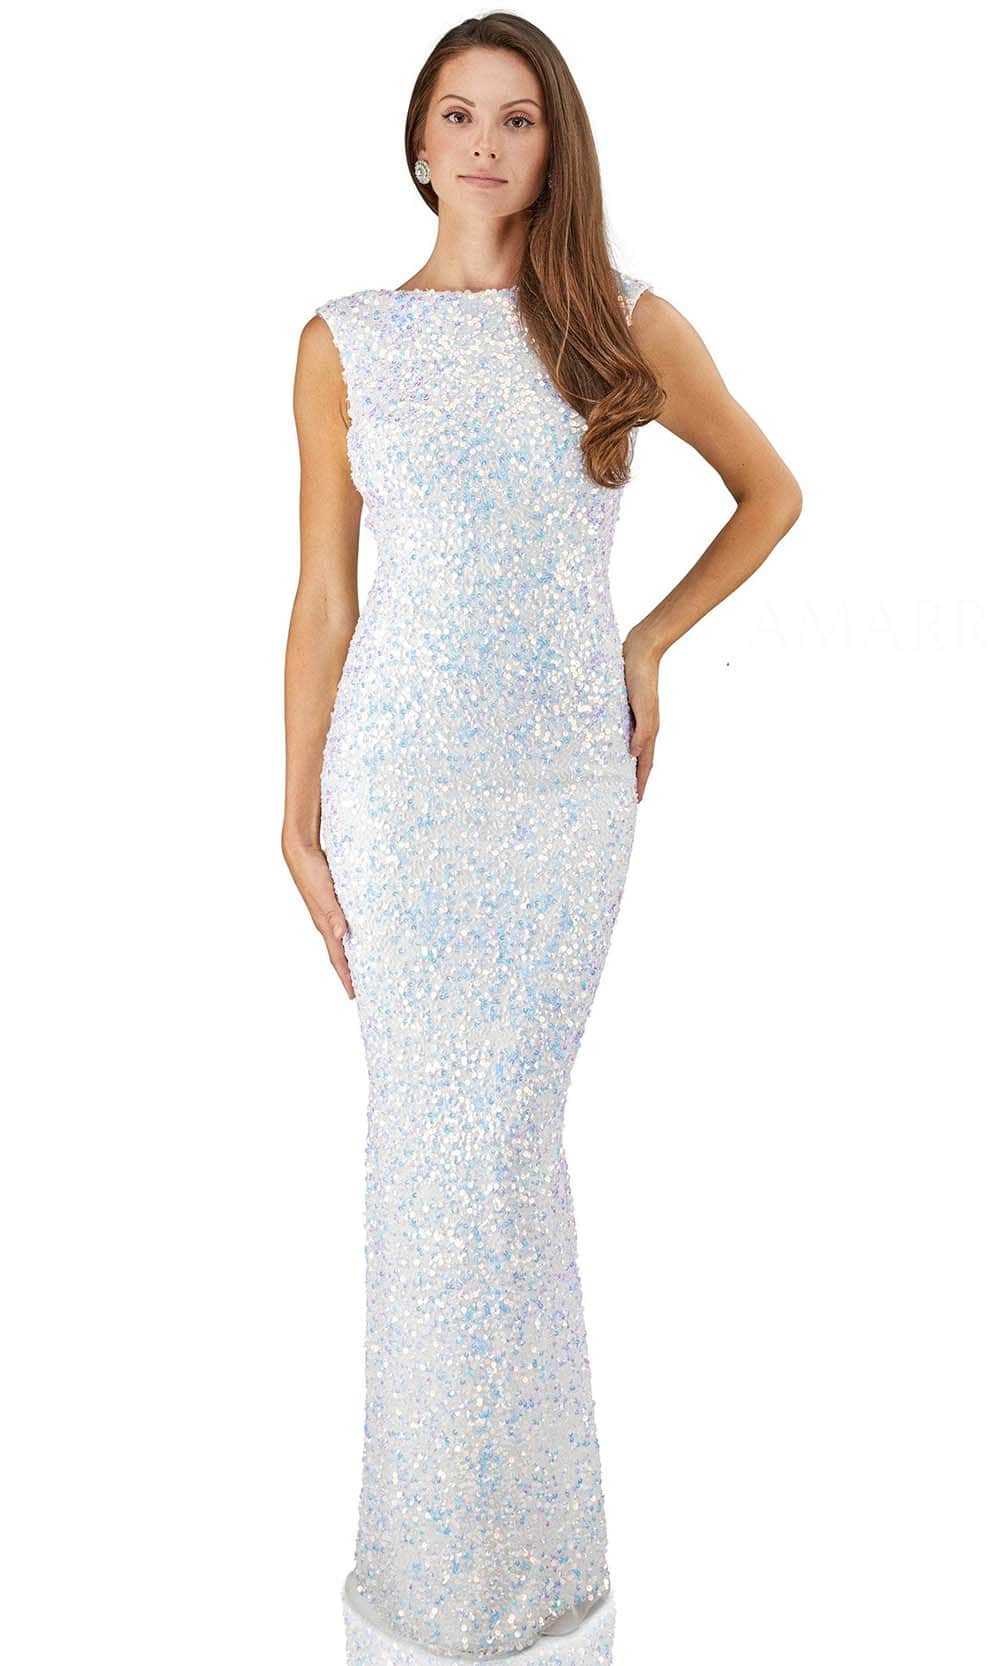 Amarra, Amarra 20936 - High Neck Beaded Evening Dress